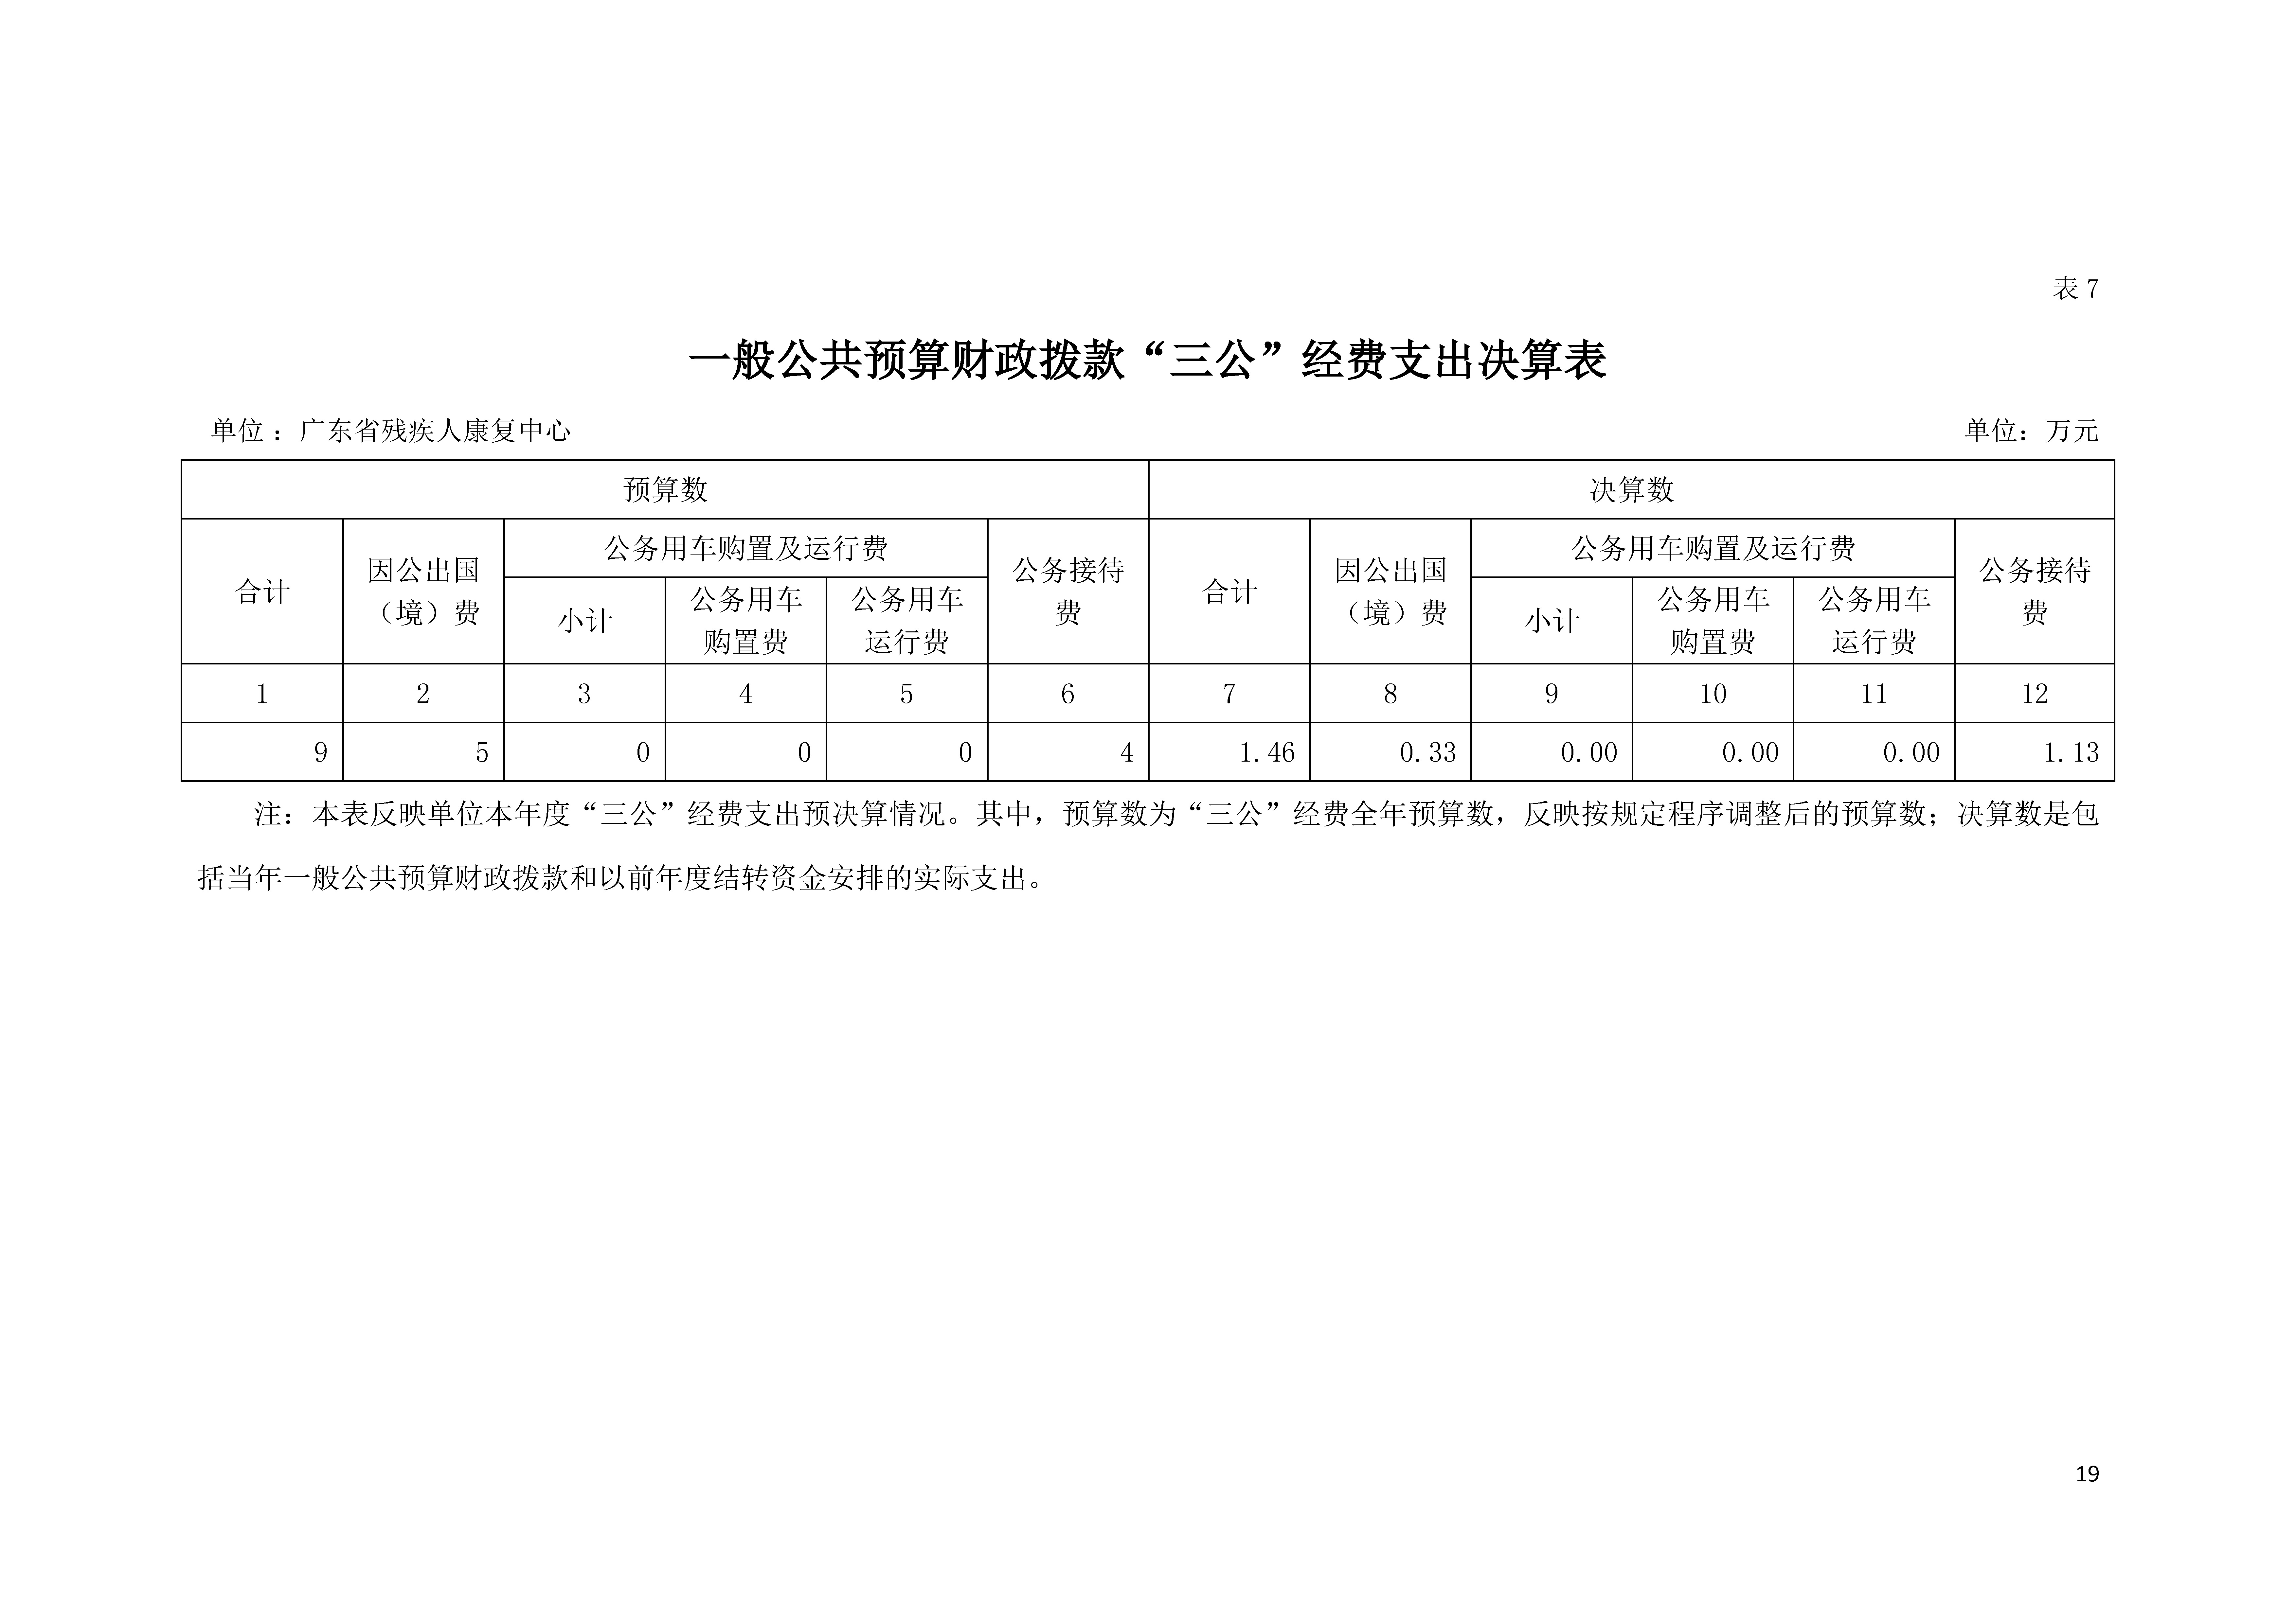 2021年广东省残疾人康复中心部门决算 0629_页面_19.jpg